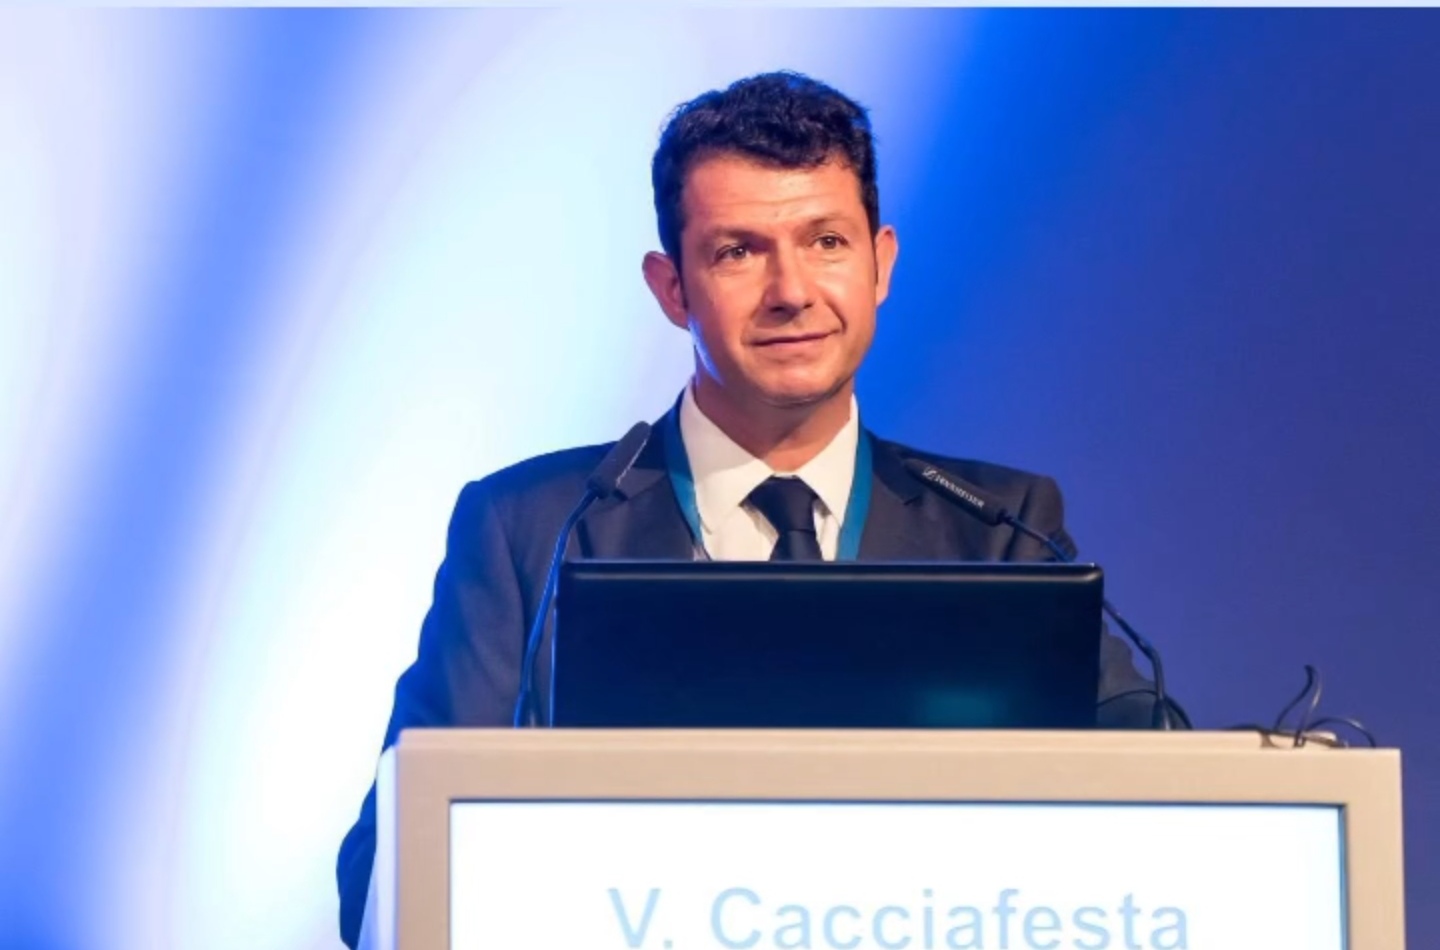 Vittorio Cacciafesta - specializzato in Ortodonzia Linguale ed Invisibile